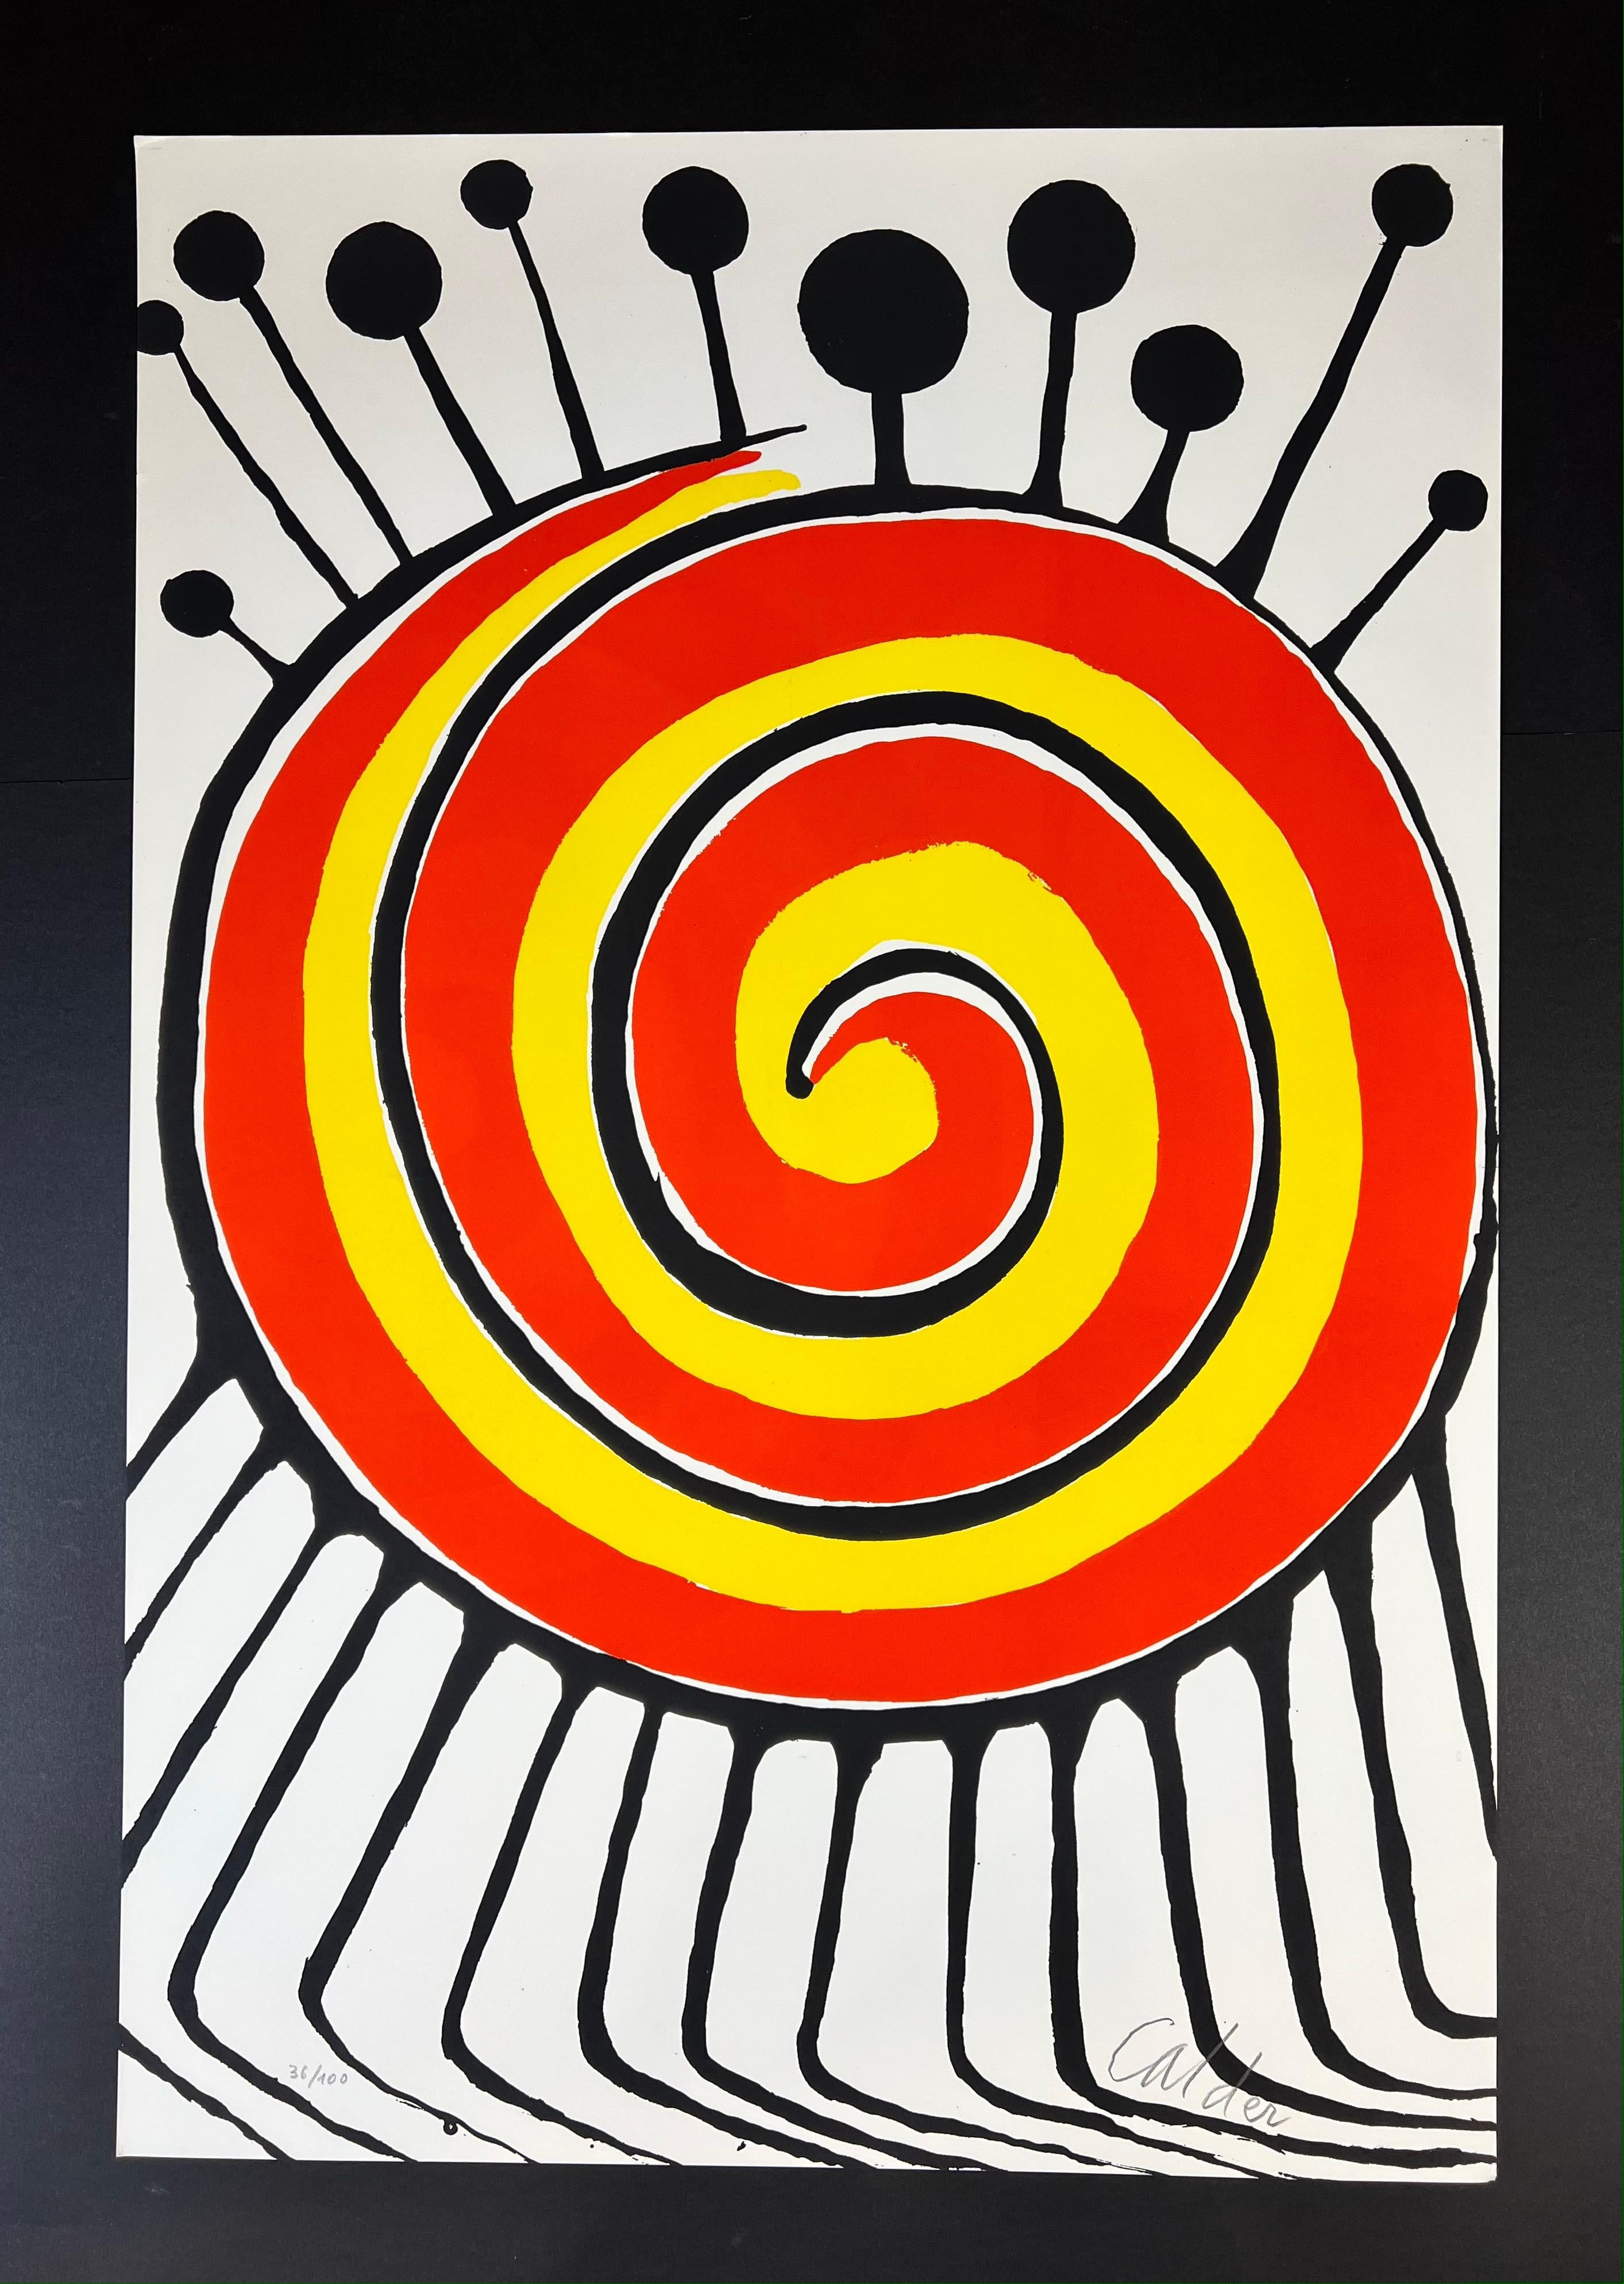 Alexander Calder ( 1898 - 1976 ) - Spirale millepiedi - handsignierte Lithographie, 1972

Zusätzliche Informationen:
MATERIAL: Farblithografie auf Papier
Herausgegeben im Jahr 1972
Limitierte Auflage von 100 Exemplaren
In der rechten unteren Ecke